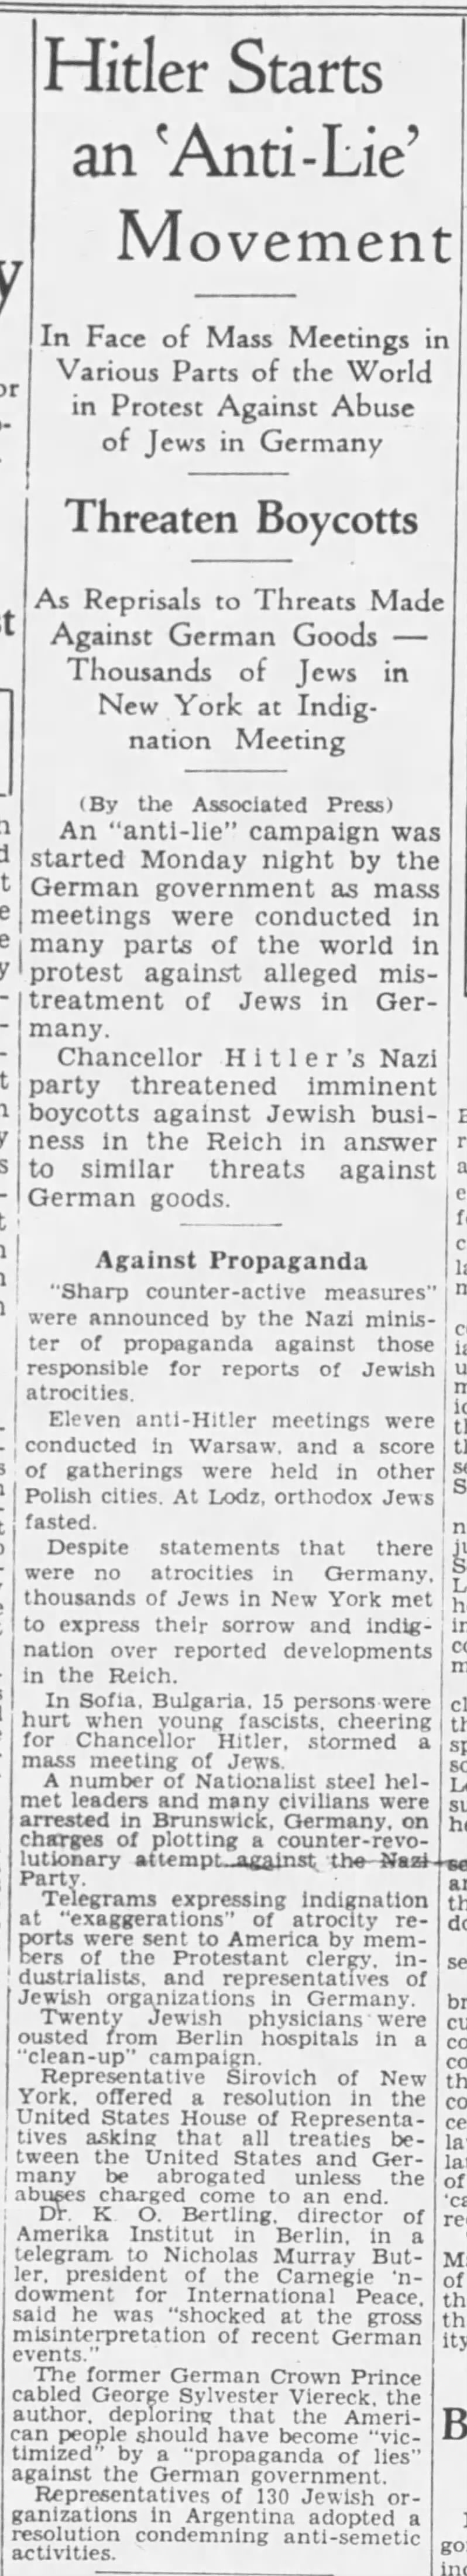 Hitler Starts an 'Anti-Lie' Movement